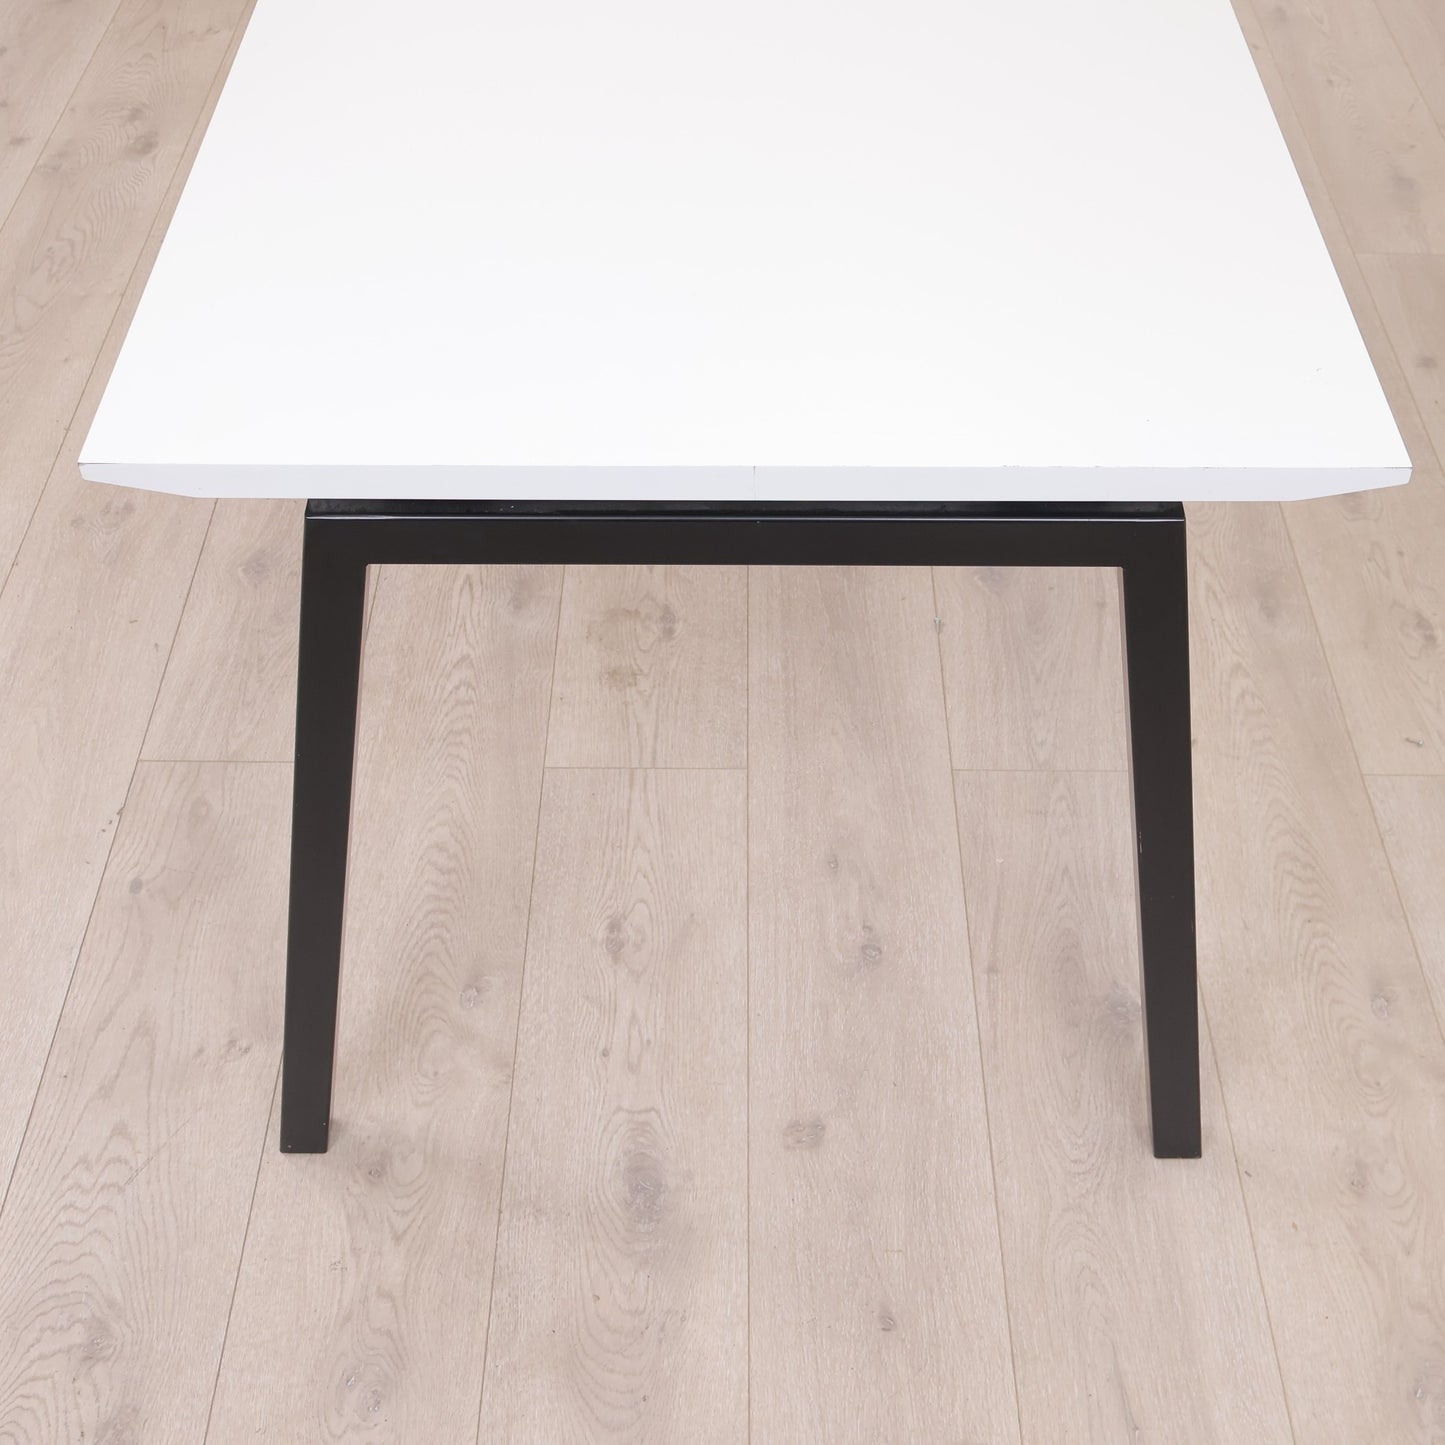 Kvalitetssikret | Euklides skrivebord i hvit/sort. 160x80 cm